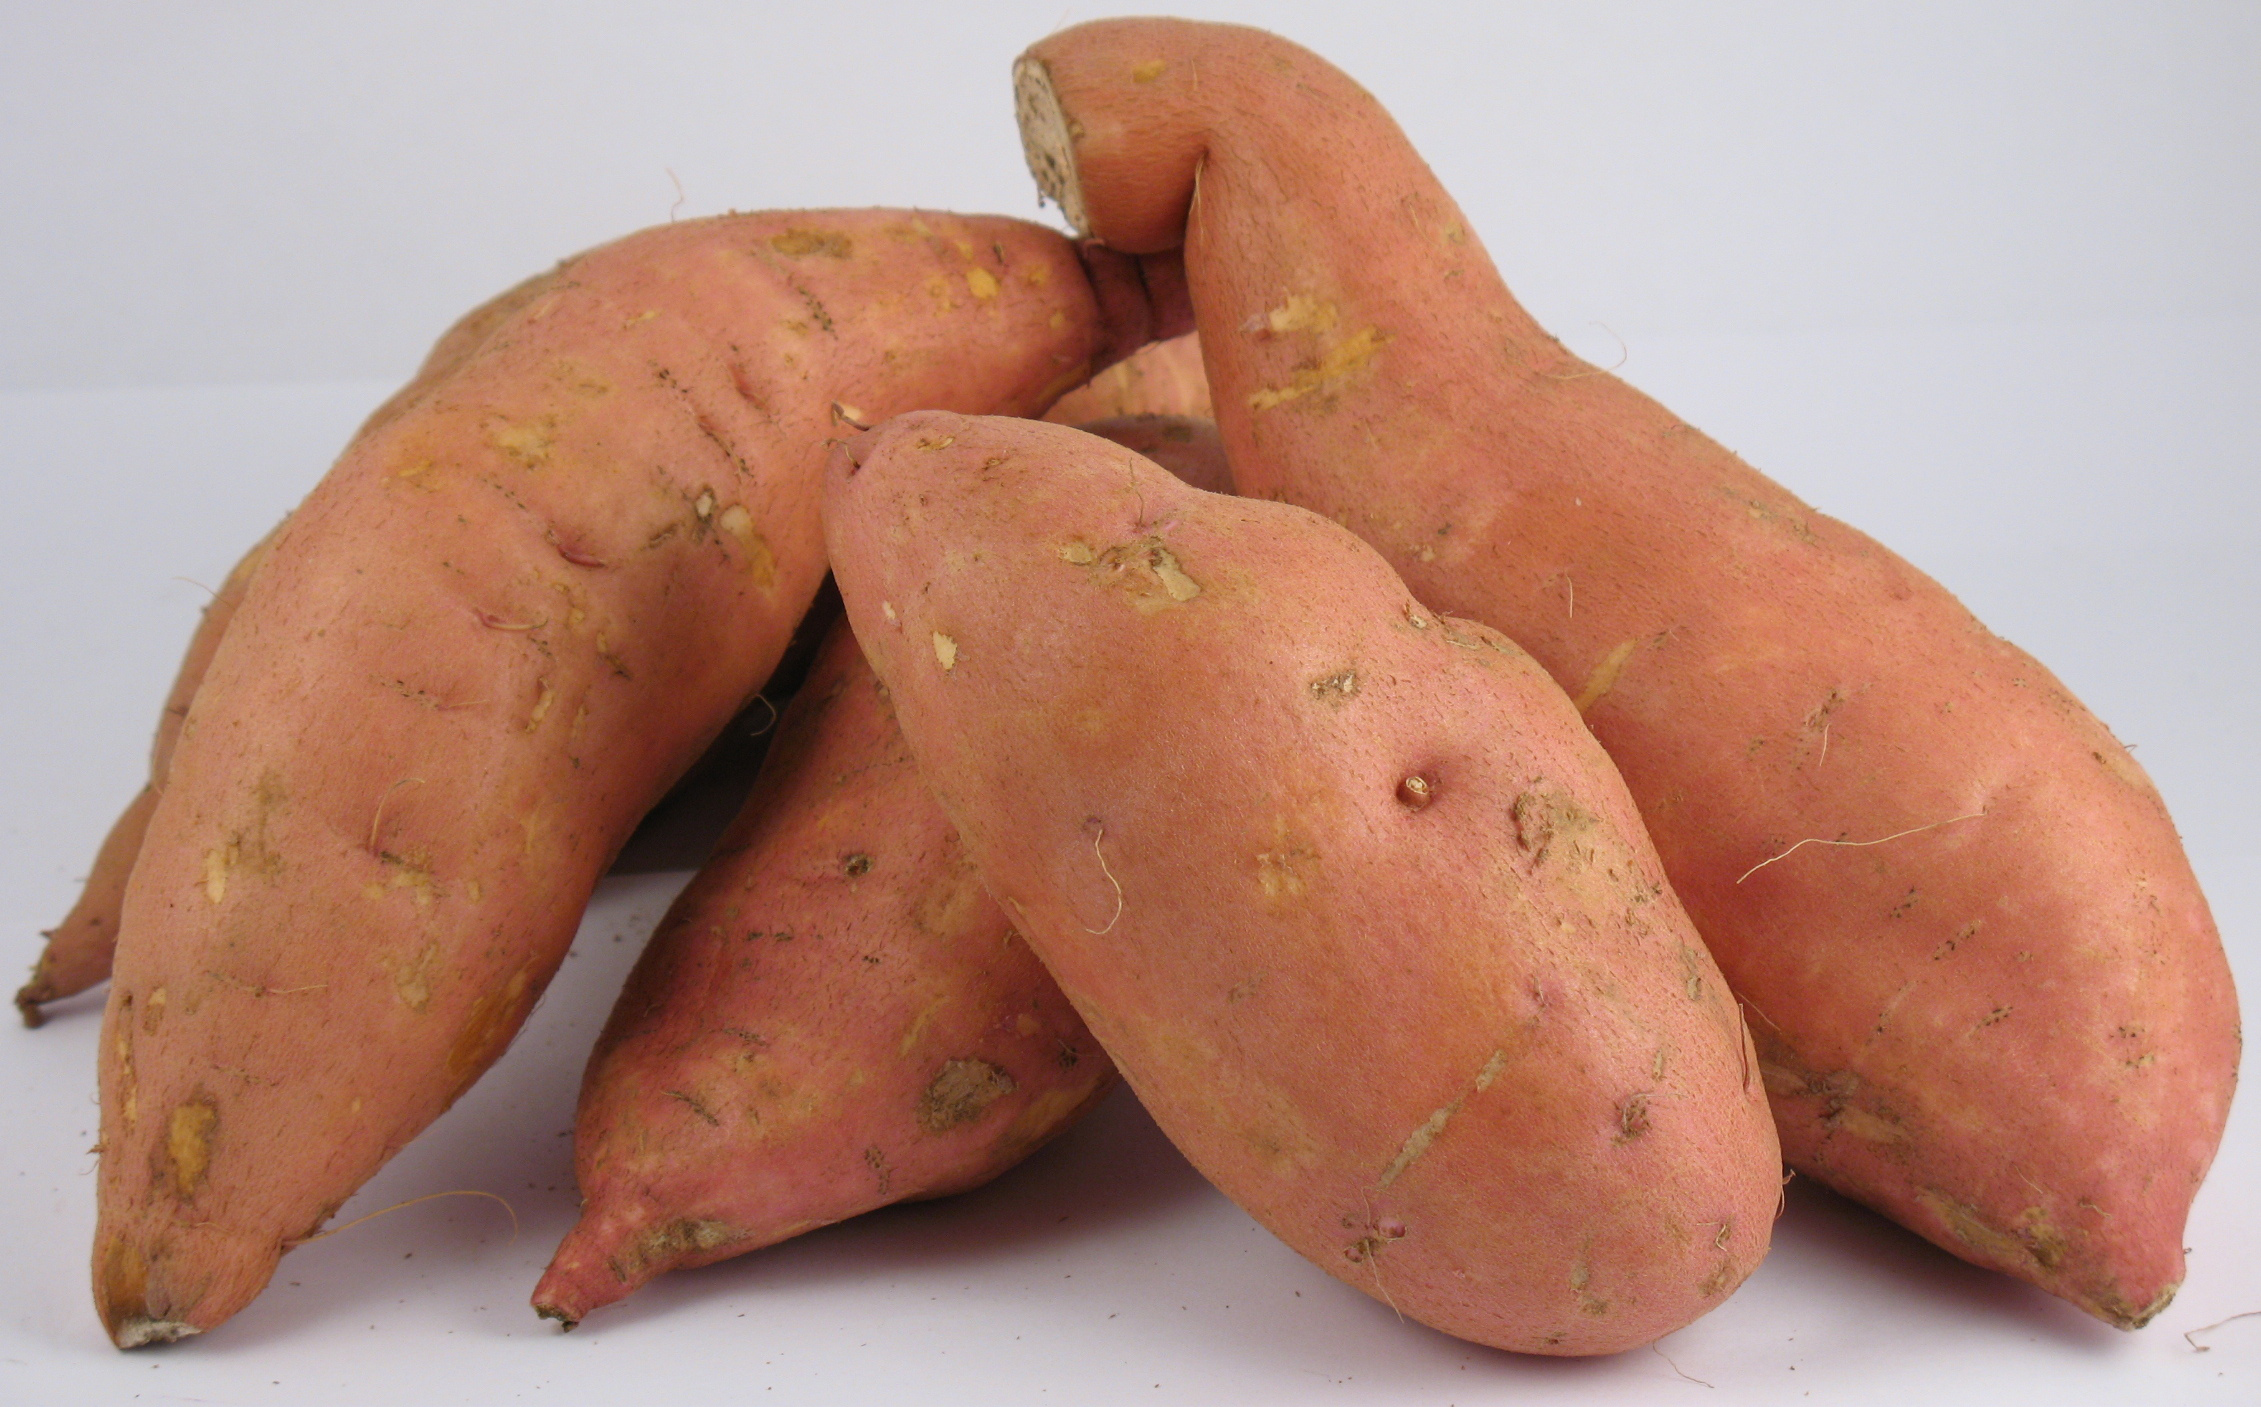 beauregard sweet potato